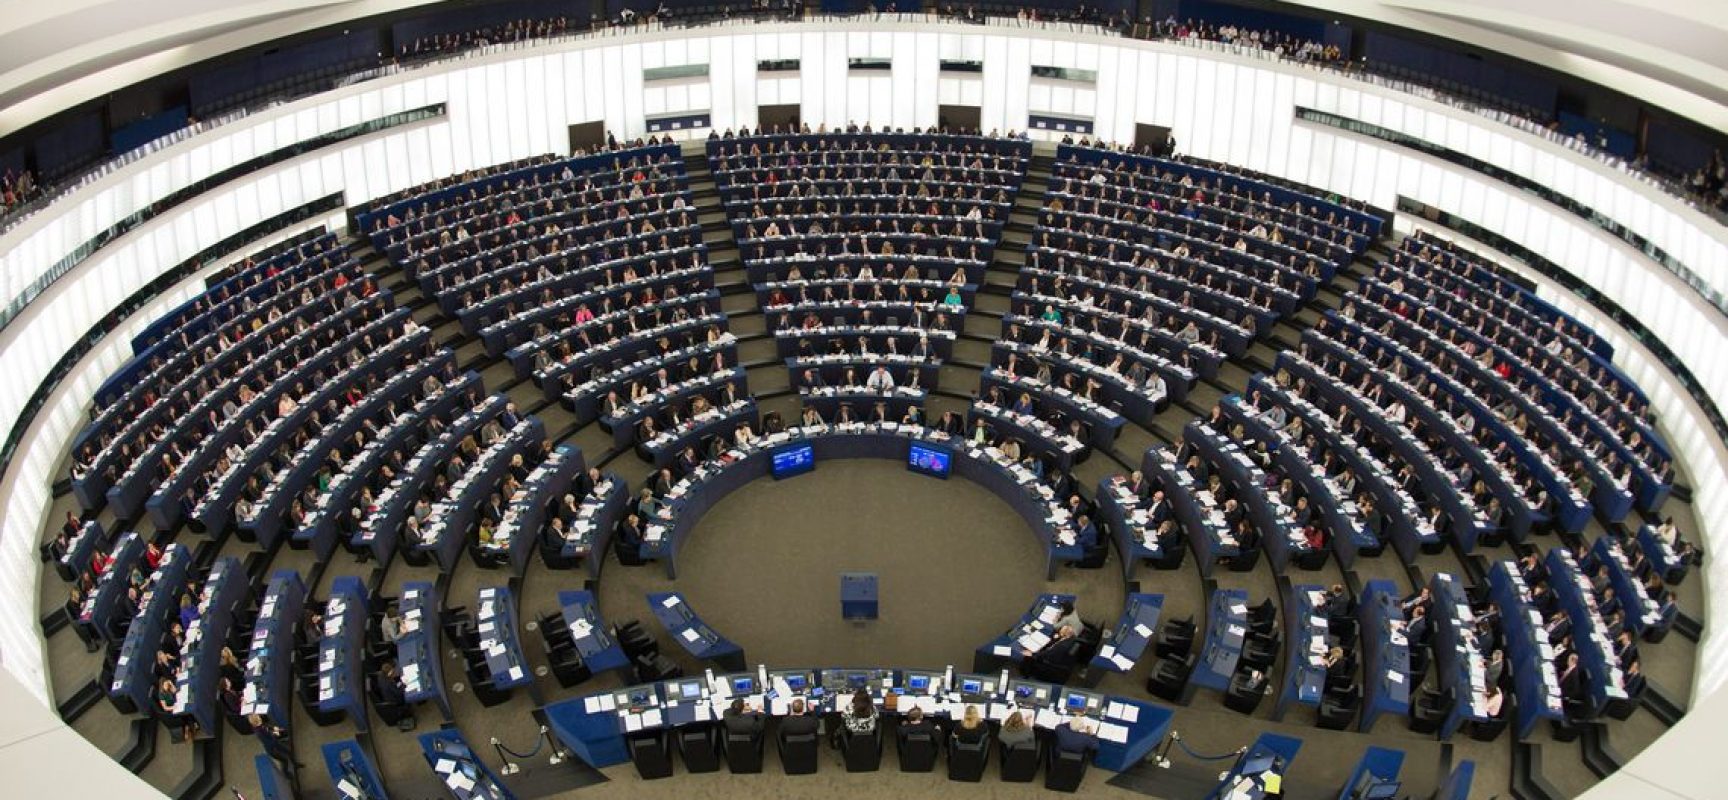 Socialista italiano Sassoli é eleito presidente do Parlamento Europeu